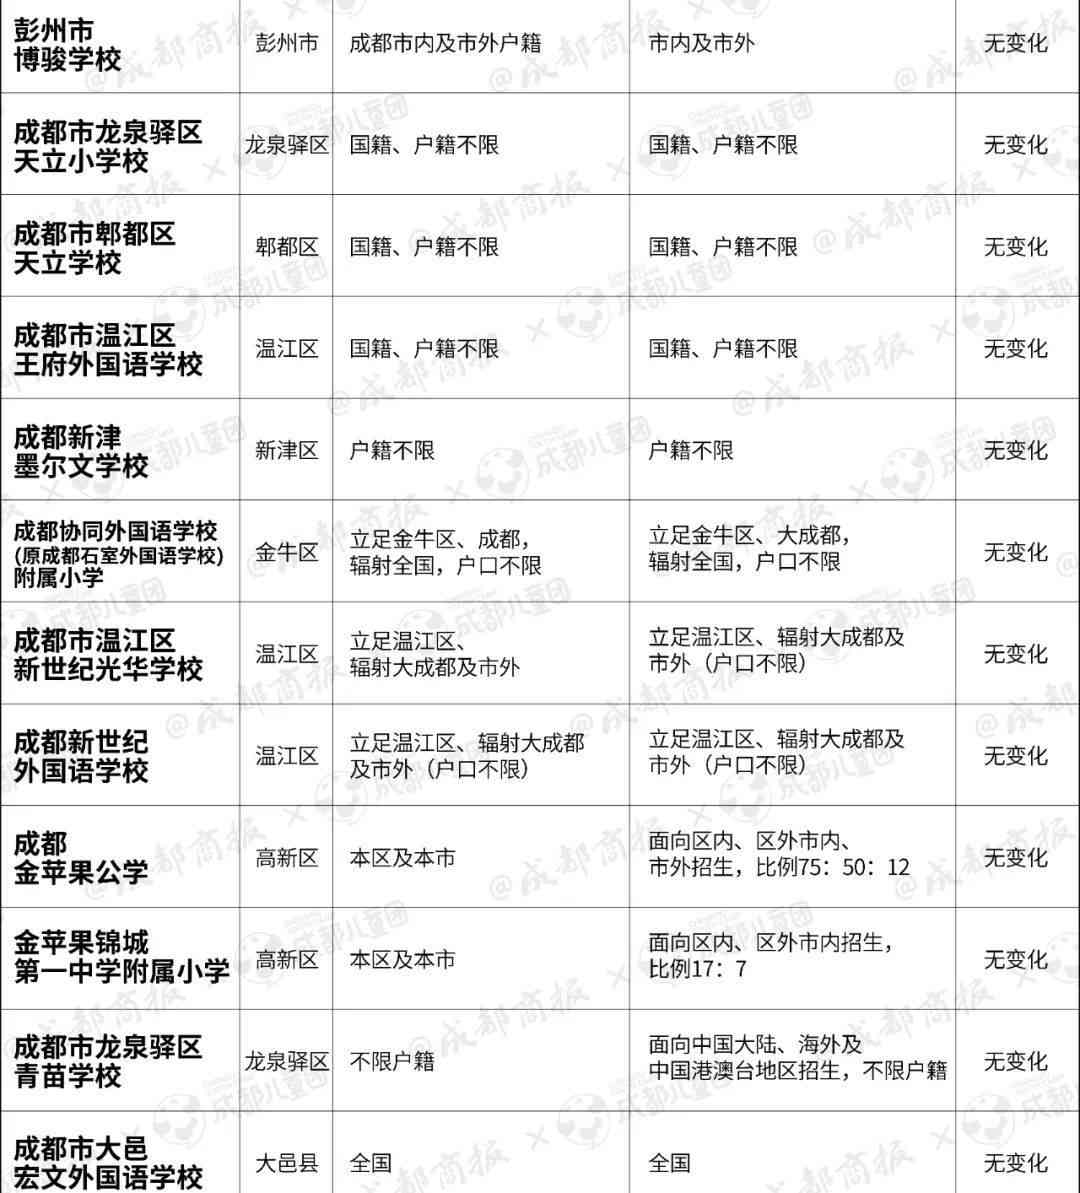 傣王贡生普洱茶全系列价格一览表：详细解析各类产品的价格及特点